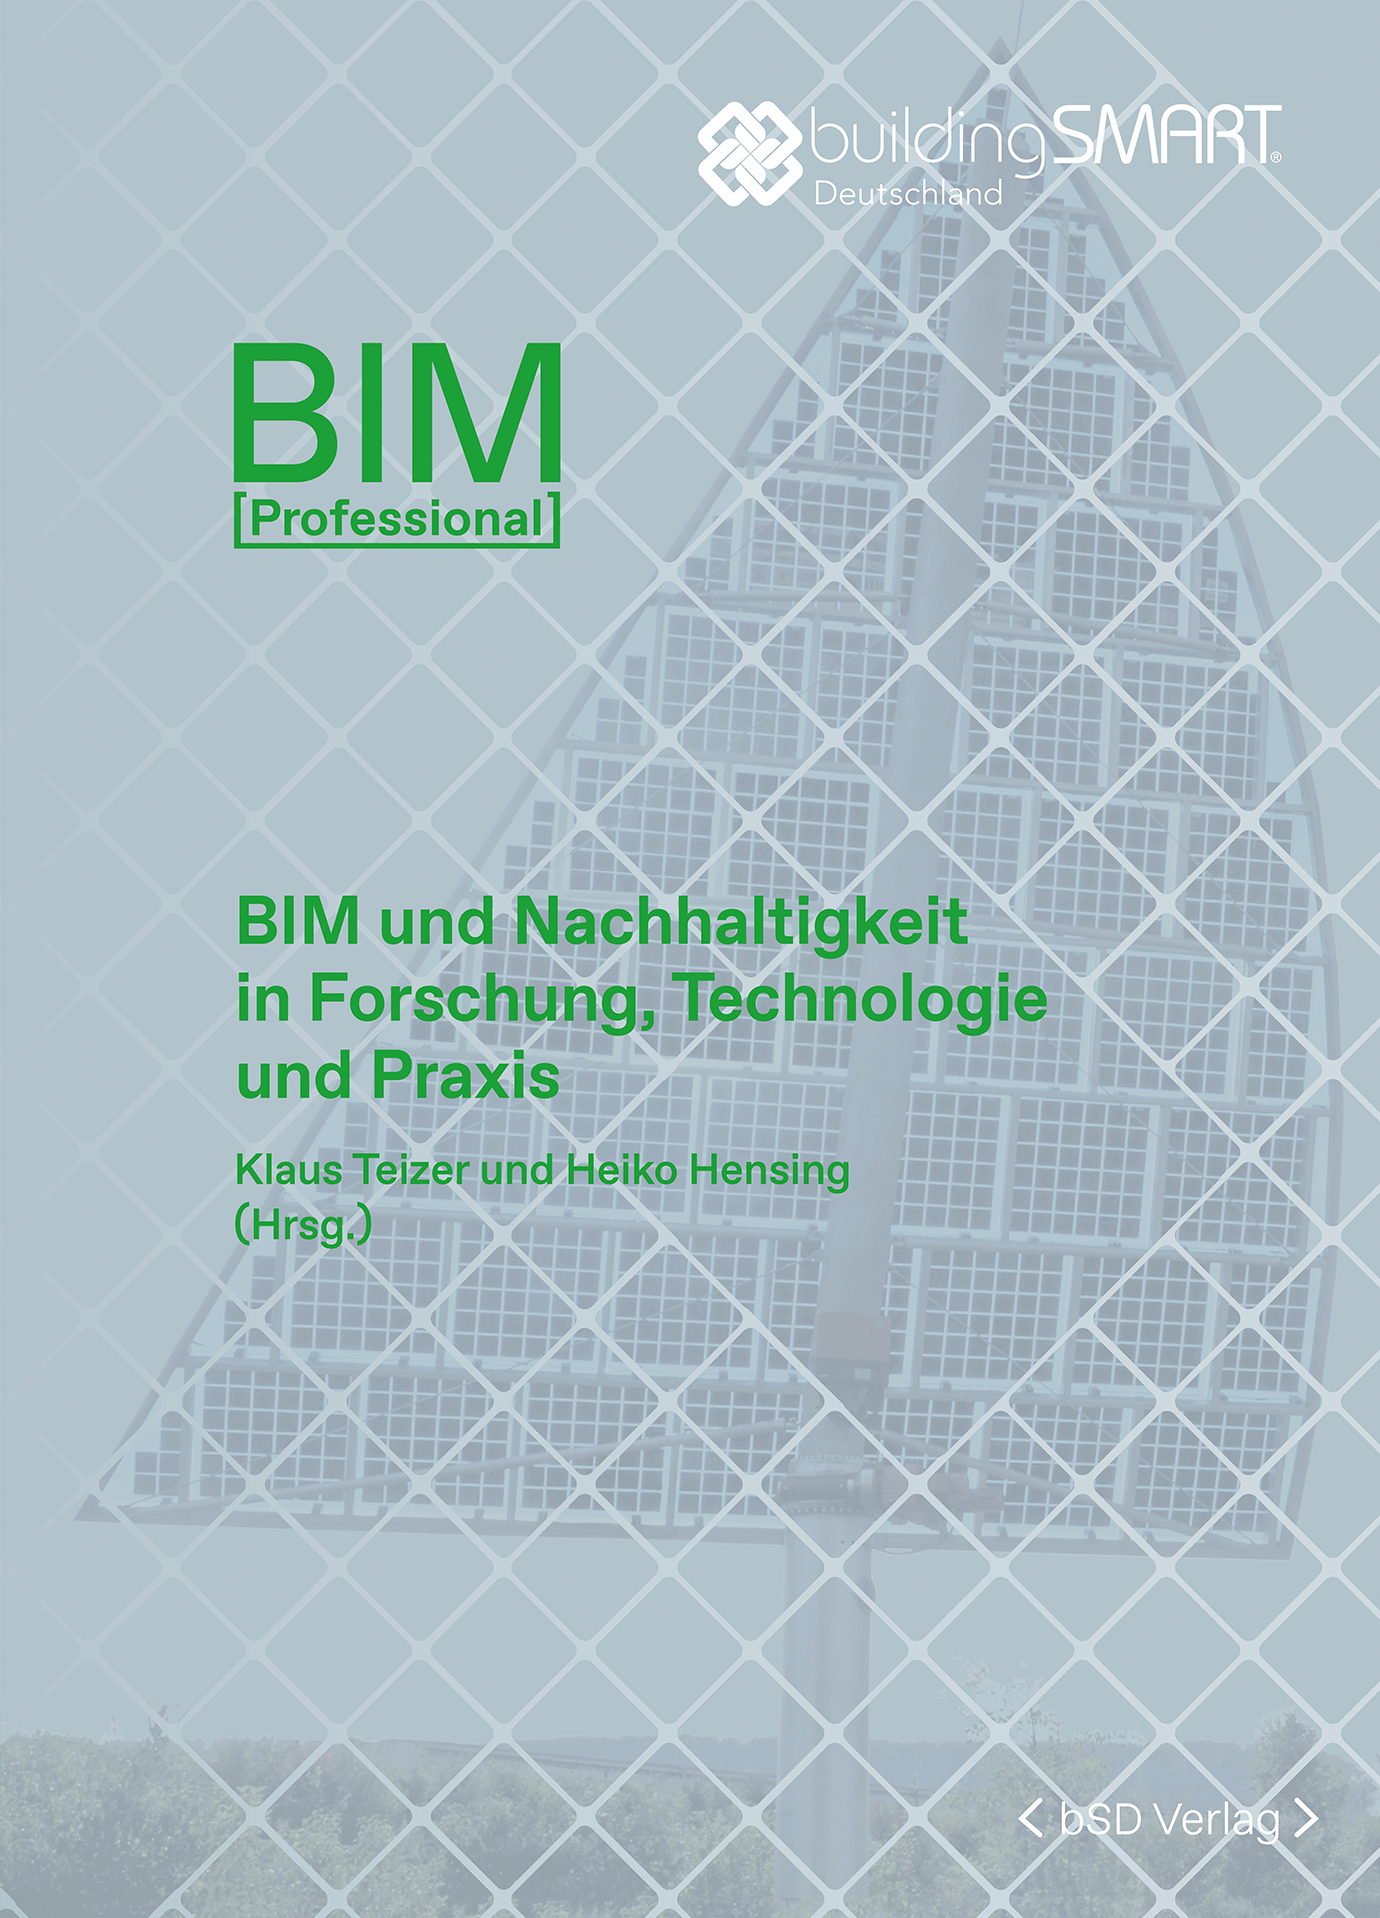 bSD Verlag/BIM Professional: BIM und Nachhaltigkeit-Forschung